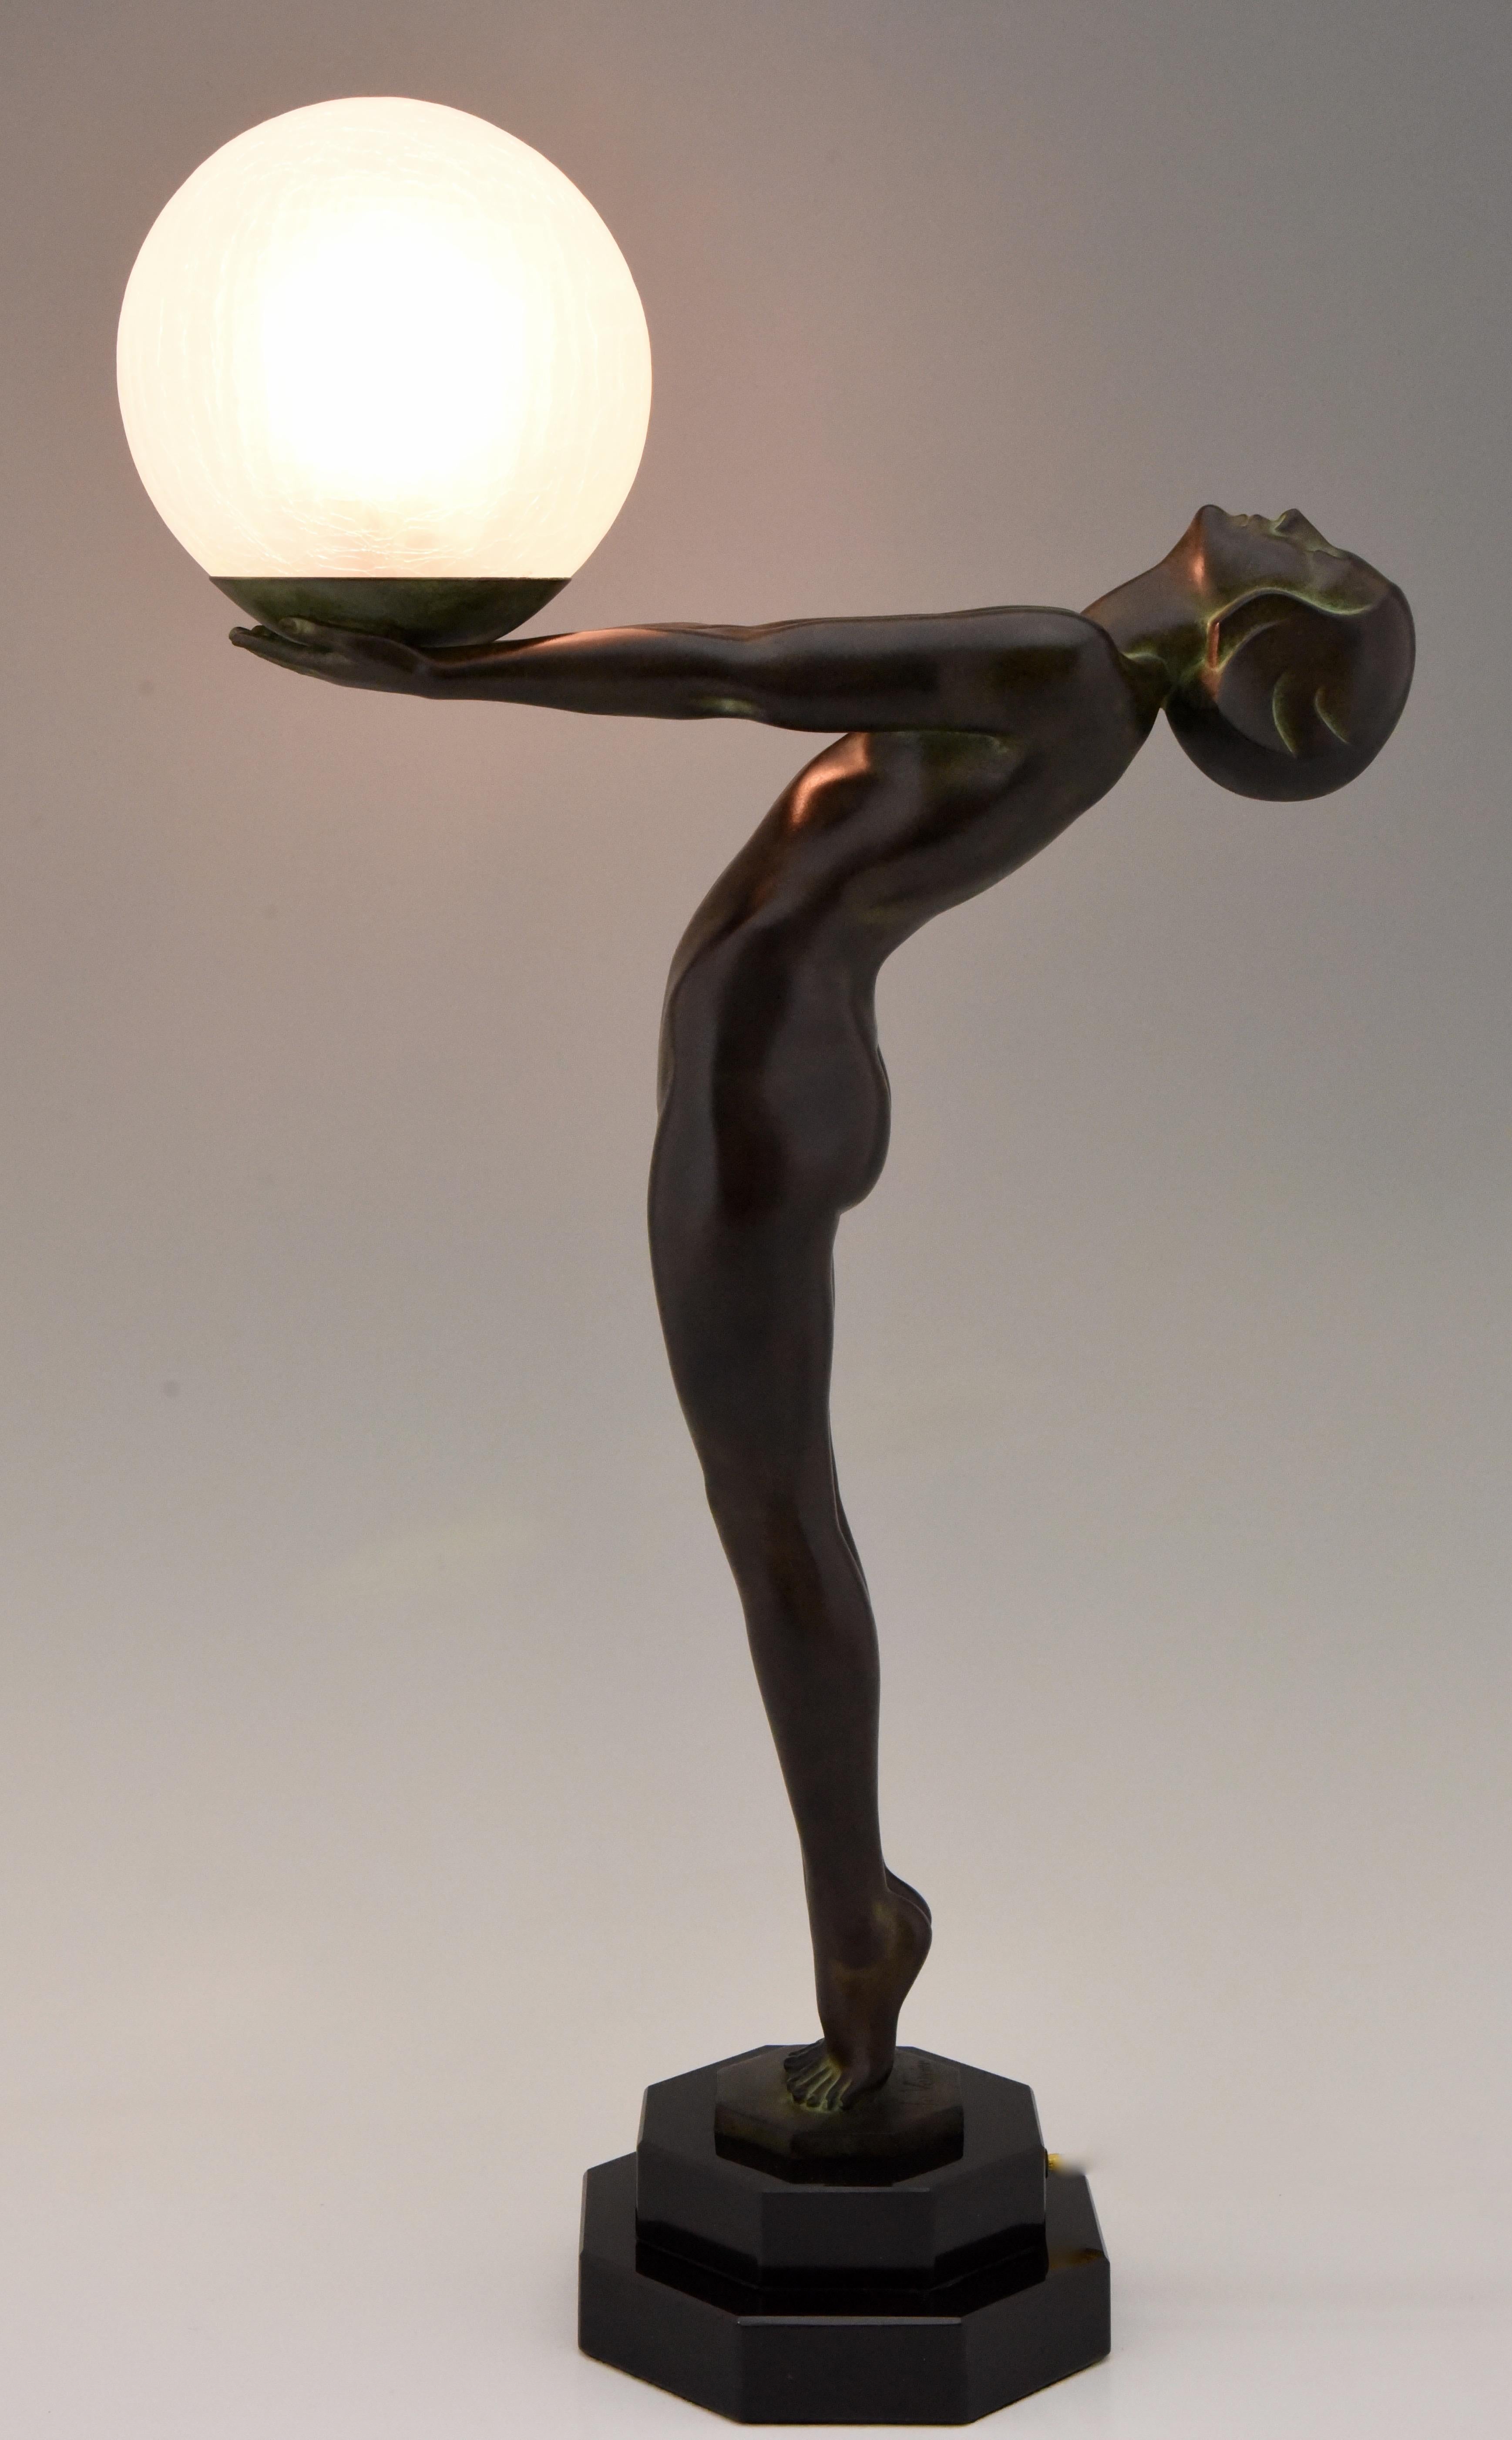 Beeindruckende Art-Déco-Tischlampe in Form eines stehenden Aktes mit Glasschirm, CLarté, Lumina.
Maße: H. 65 cm oder 25,6 Zoll hoch.
Entworfen von Max Le Verrier in Frankreich, 1928.
Originaler posthumer zeitgenössischer Guss in der Gießerei Le